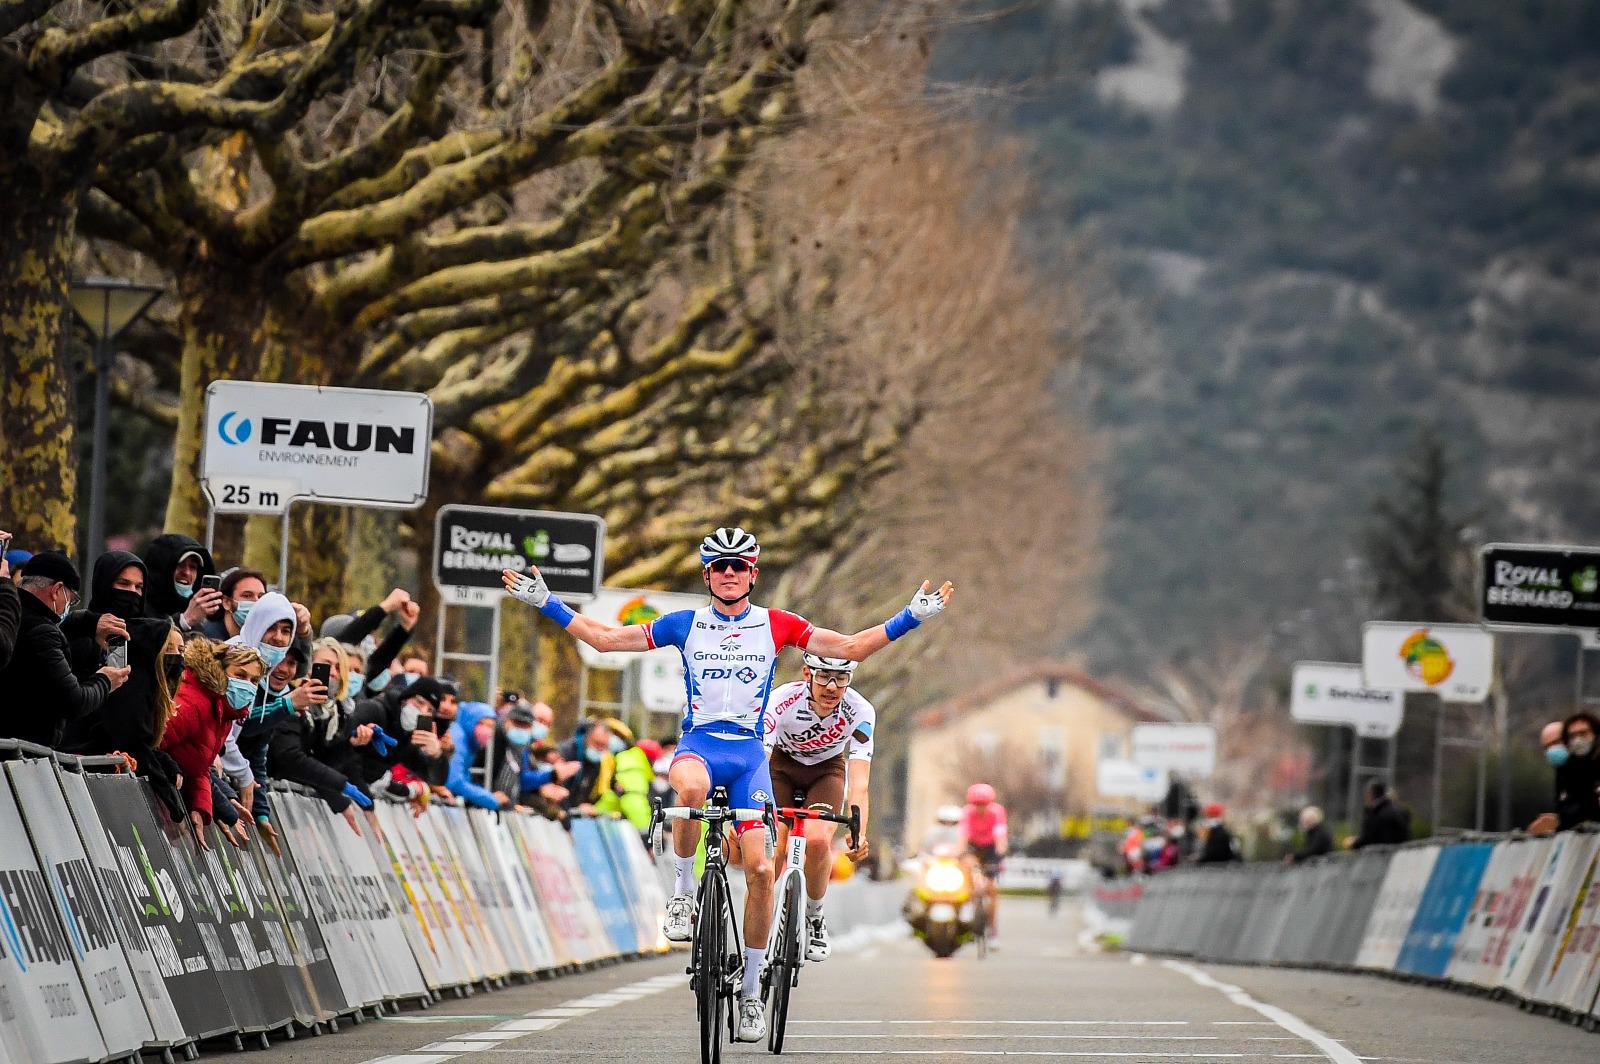 Давид Году выиграл однодневную велогонку Faun-Ardèche Classic - 2021